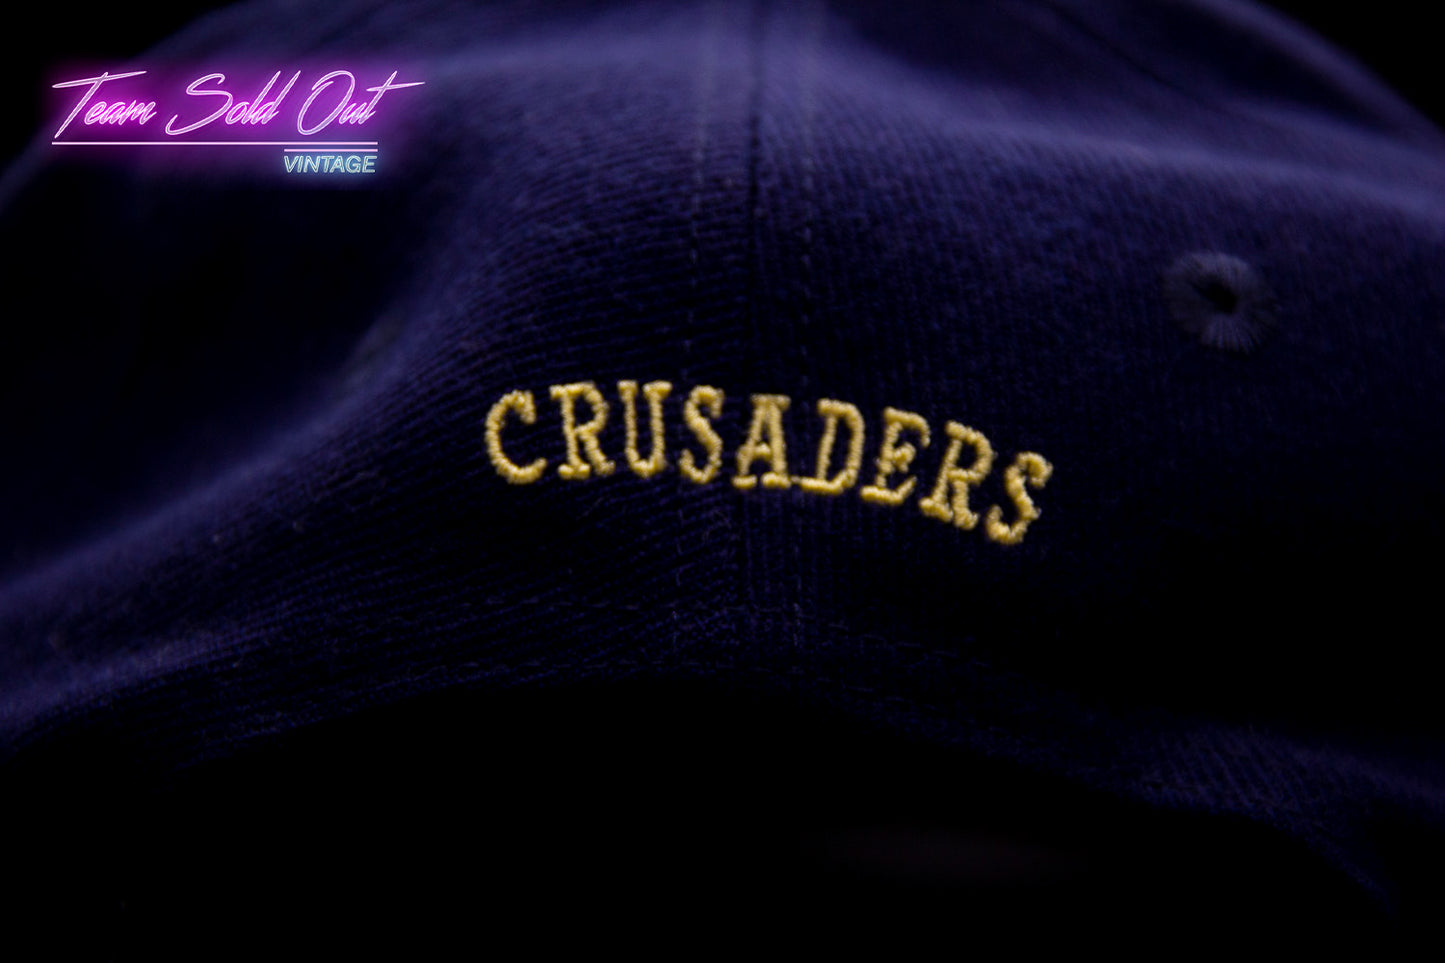 Vintage The Game Holy Cross Crusaders Helmet Logo Snapback Hat NCAA